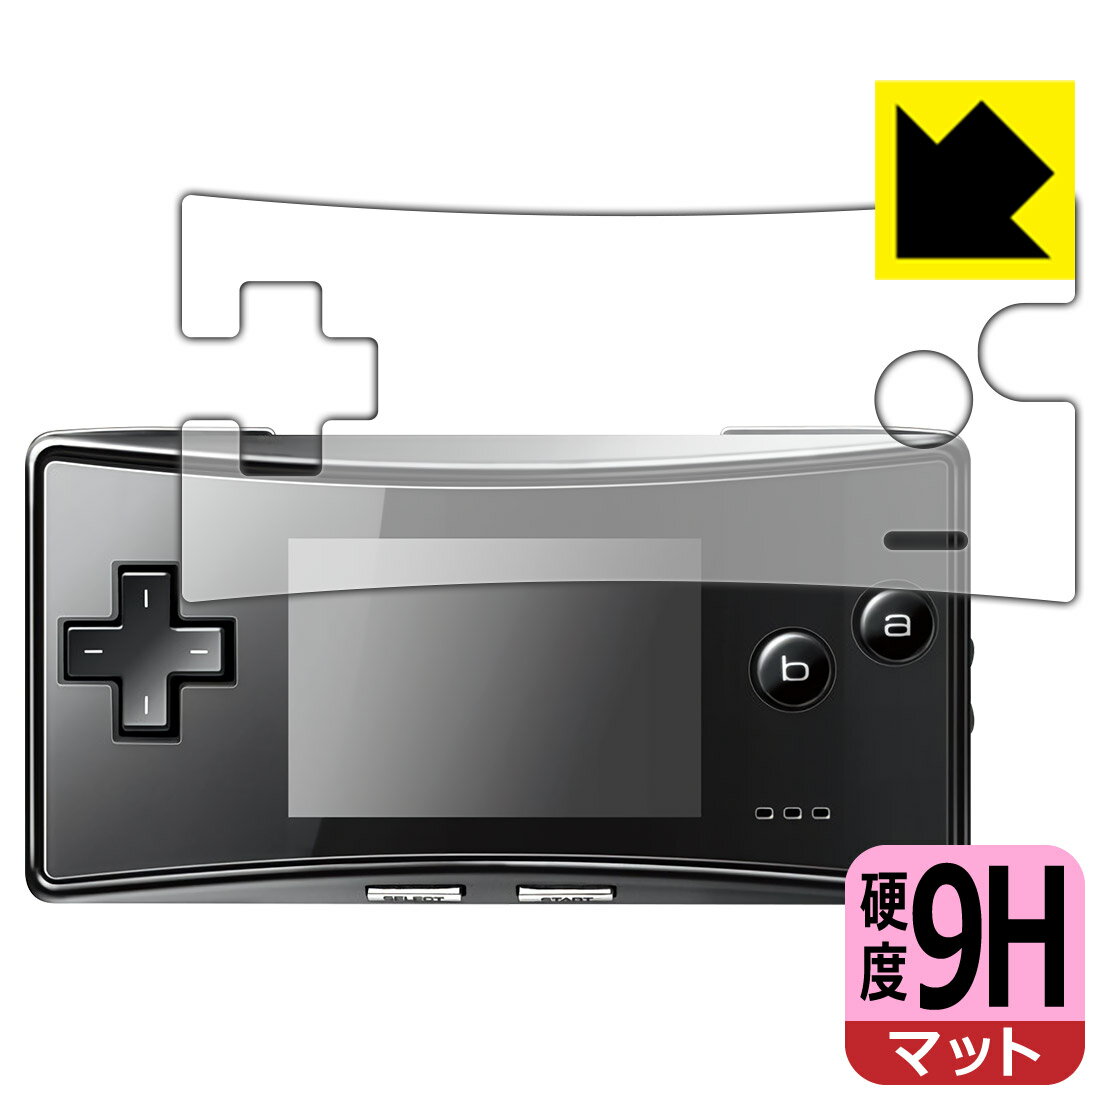 ●対応機種 : Nintendo(任天堂) ゲームボーイミクロ(GAMEBOY micro) (OXY-001) 用の商品です。●内容量 : 1枚●※機器成型時の仕上がり具合により、保護フィルムを貼り付けても密着しない部分ができる場合があります。ご了承ください。(保護フィルムの貼り付く範囲はイメージ画像のようになります)　　※このページに記載されている会社名や製品名、対応機種名などは各社の商標、または登録商標です。●柔軟性があり、ガラスフィルムのように衝撃を受けても割れない『9H高硬度【反射低減】保護フィルム』 ●安心の国産素材を使用。日本国内の自社工場で製造し出荷しています。【ポスト投函送料無料】商品は【ポスト投函発送 (追跡可能メール便)】で発送します。お急ぎ、配達日時を指定されたい方は以下のクーポンを同時購入ください。【お急ぎ便クーポン】　プラス110円(税込)で速達扱いでの発送。お届けはポストへの投函となります。【配達日時指定クーポン】　プラス550円(税込)で配達日時を指定し、宅配便で発送させていただきます。【お急ぎ便クーポン】はこちらをクリック【配達日時指定クーポン】はこちらをクリック 　 表面硬度はガラスフィルムと同等の9Hですが、しなやかな柔軟性がある「超ハードコートPETフィルム」なので衝撃を受けても割れません。厚みも一般的なガラスフィルムより薄い約0.2mmでタッチ操作の感度も良好です。(※1) 表面に微細な凹凸を作ることにより、外光を乱反射させギラツキを抑える「アンチグレア加工」がされております。 屋外での太陽光の映り込み、屋内でも蛍光灯などの映り込みが気になるシーンが多い方におすすめです。 また、指紋がついた場合でも目立ちにくいという特長があります。 反射防止のアンチグレア加工で指紋が目立ちにくい上、表面はフッ素コーティングがされており、皮脂や汚れがつきにくく、また、落ちやすくなっています。指滑りはさらさらな使用感です。 油性マジックのインクもはじきますので簡単に拭き取れます。 接着面は気泡の入りにくい特殊な自己吸着タイプです。素材に柔軟性があり、貼り付け作業も簡単にできます。また、はがすときにガラス製フィルムのように割れてしまうことはありません。 貼り直しが何度でもできるので、正しい位置へ貼り付けられるまでやり直すことができます。 最高級グレードの国産素材を日本国内の弊社工場で加工している完全な Made in Japan です。安心の品質をお届けします。 ※1「表面硬度 9H」の表示は素材として使用しているフィルムの性能です。機器に貼り付けた状態の測定結果ではありません。 使用上の注意 ●本製品は機器の画面をキズなどから保護するフィルムです。他の目的にはご使用にならないでください。 ●本製品は液晶保護および機器本体を完全に保護することを保証するものではありません。機器の破損、損傷、故障、その他損害につきましては一切の責任を負いかねます。 ●製品の性質上、画面操作の反応が変化したり、表示等が変化して見える場合がございます。 ●貼り付け作業時の失敗(位置ズレ、汚れ、ゆがみ、折れ、気泡など)および取り外し作業時の破損、損傷などについては、一切の責任を負いかねます。 ●水に濡れた状態でのご使用は吸着力の低下などにより、保護フィルムがはがれてしまう場合がございます。防水対応の機器でご使用の場合はご注意ください。 ●アルコール類やその他薬剤を本製品に付着させないでください。表面のコーティングや吸着面が変質するおそれがあります。 ●品質向上のため、仕様などを予告なく変更する場合がございますので、予めご了承ください。